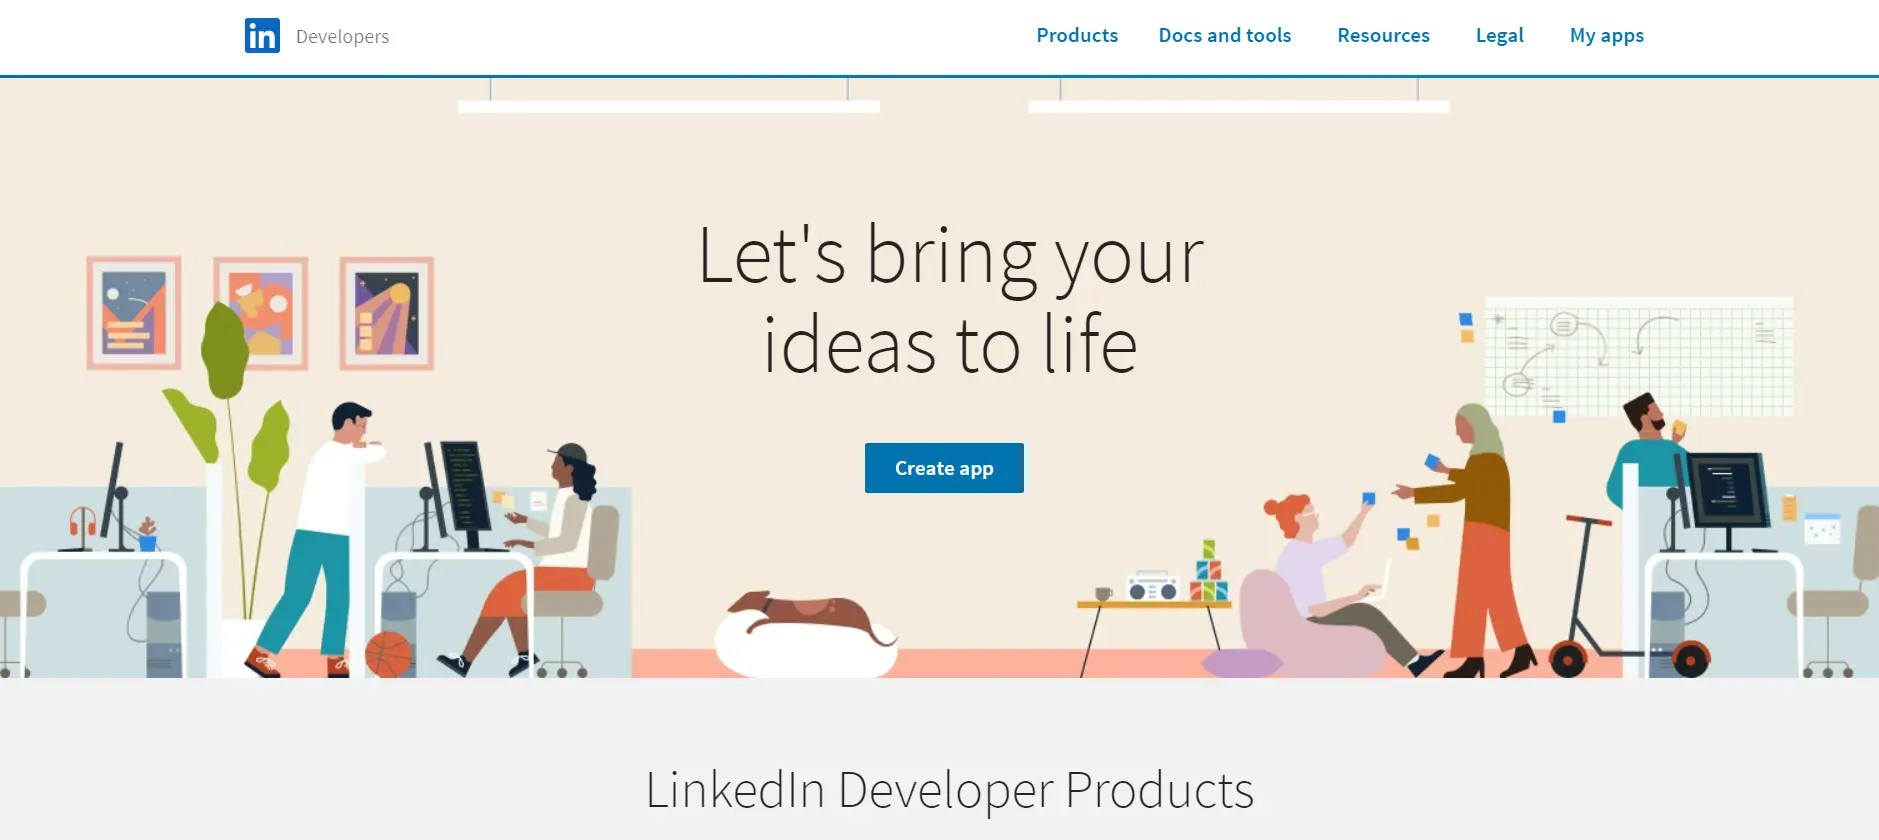 Vue.jsSSO LinkedIn: Create-application